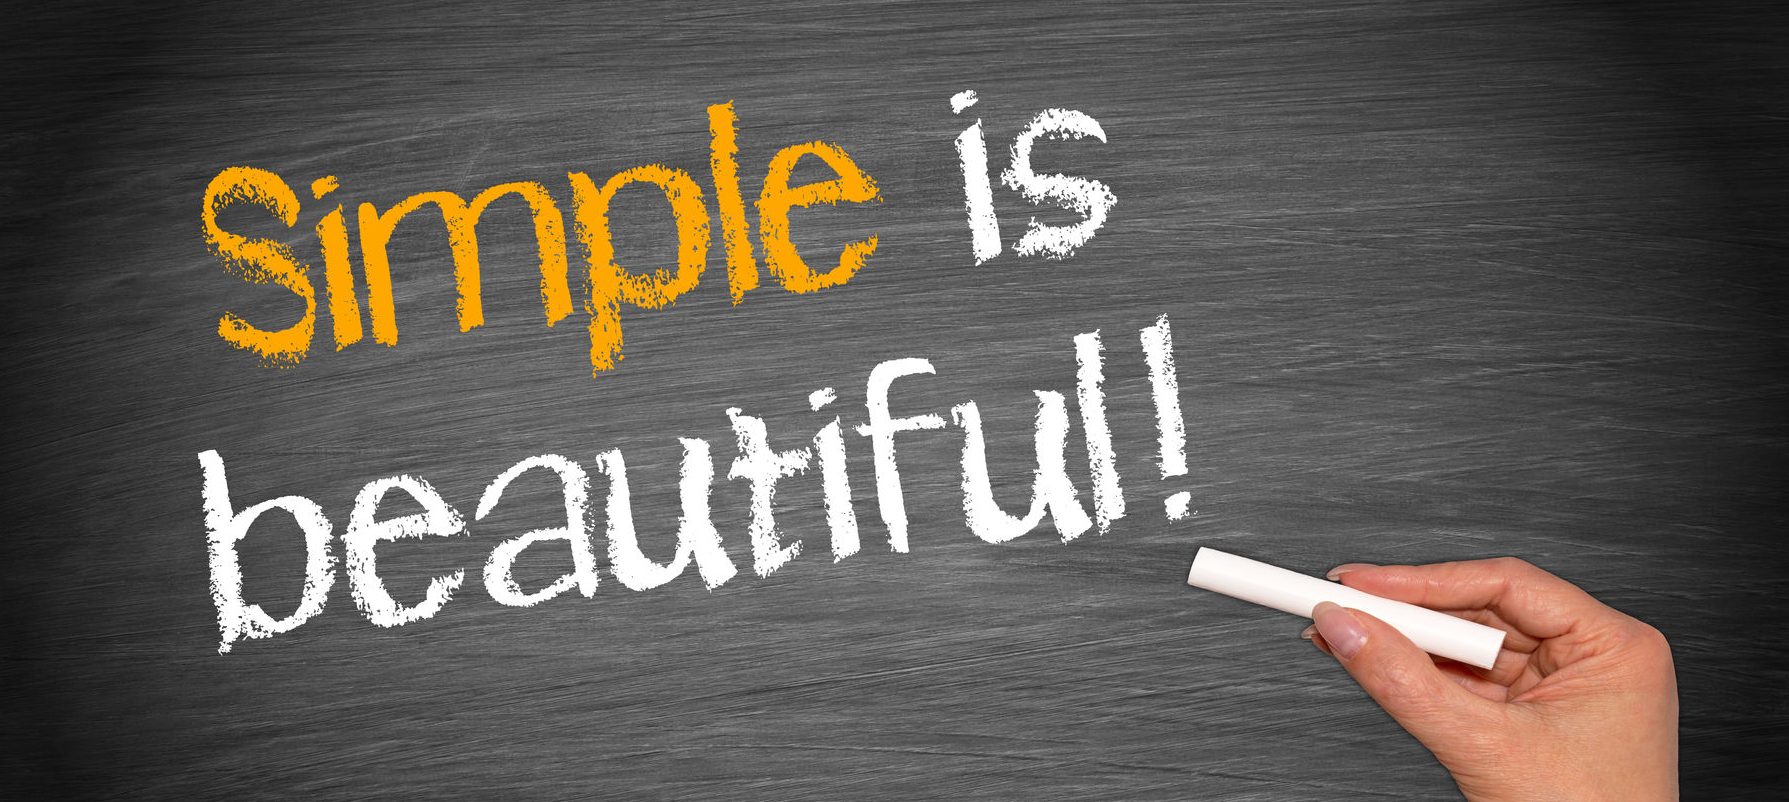 Картинки simple. Beauty is simple. Keep it simple картинки. Simple is beautiful